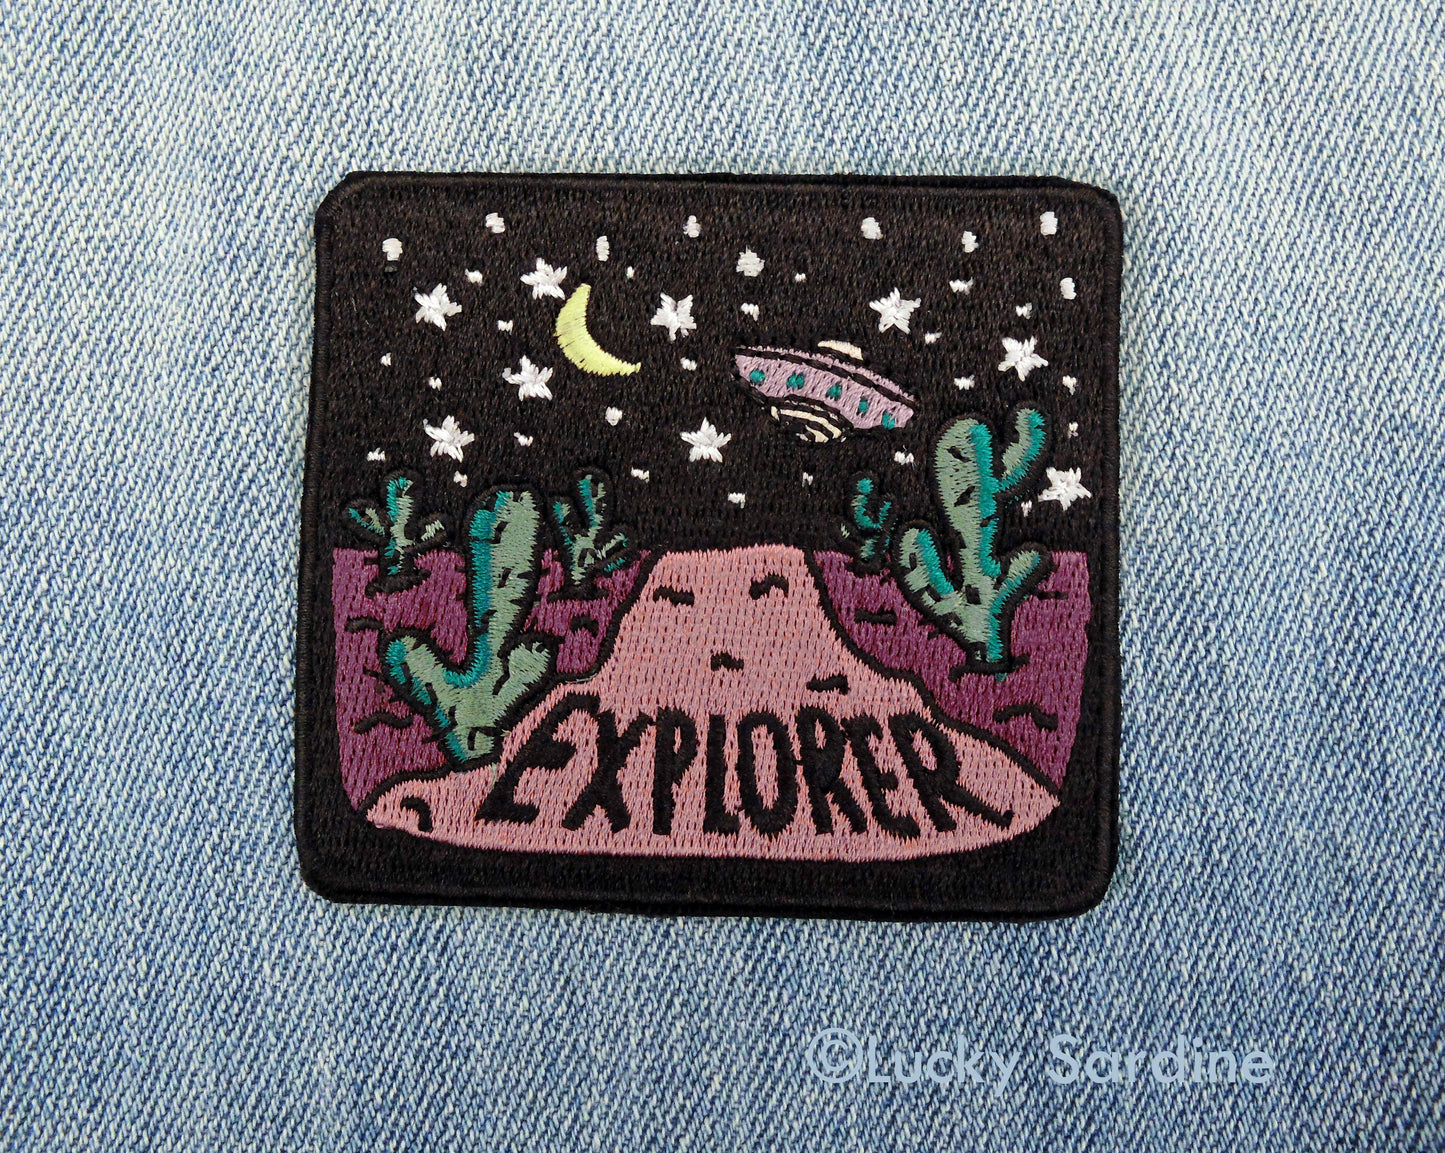 Desert Night, Spacecraft Explorer Embroidered Patch